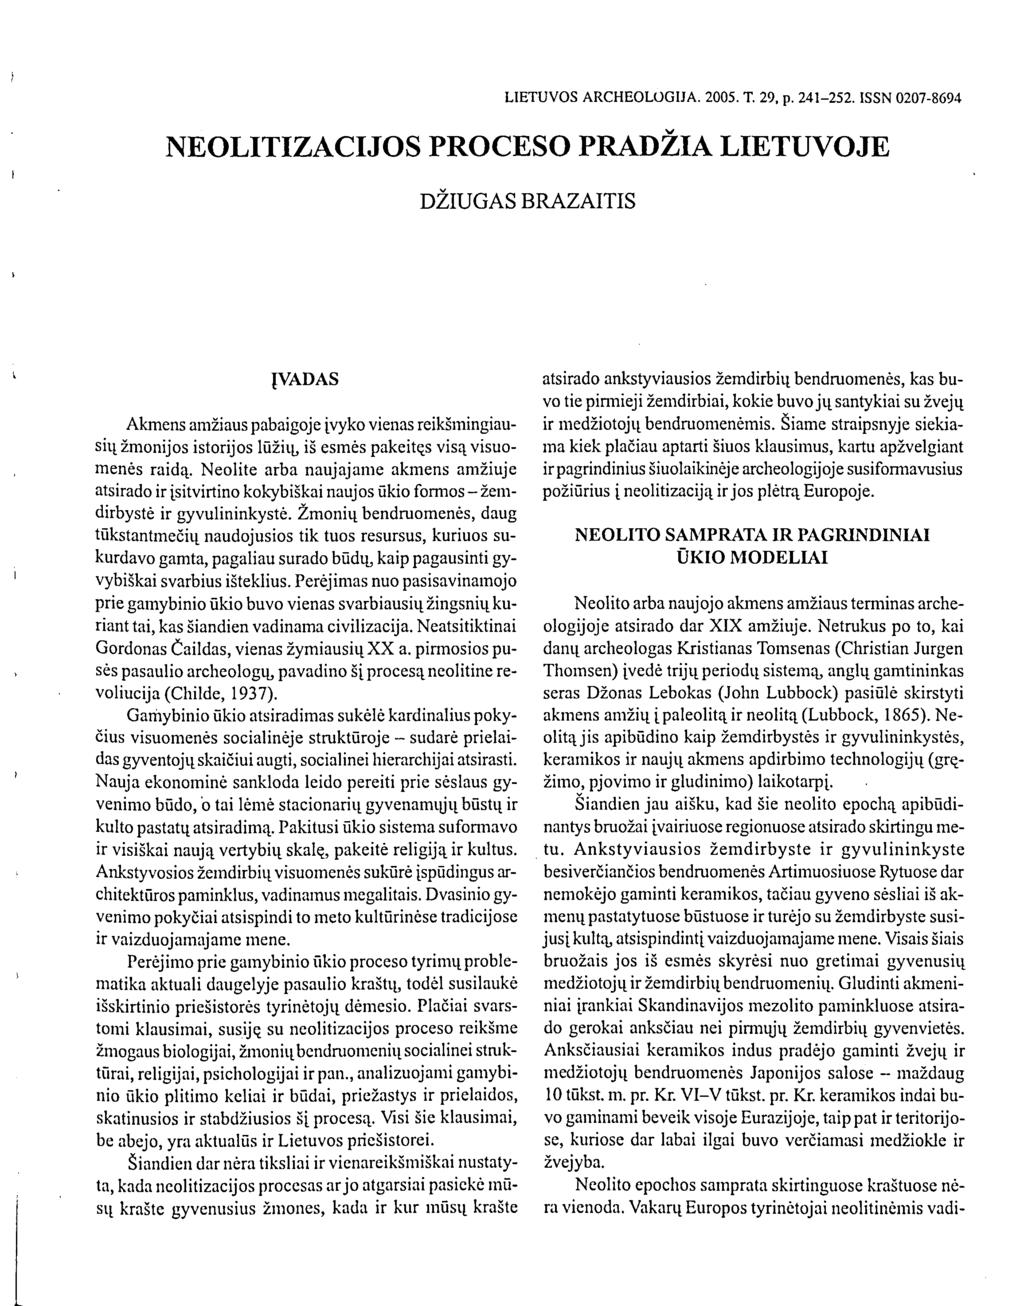 LIETUVOS ARCHEOLOGIJA. 2005. T. 29, p. 241-252.